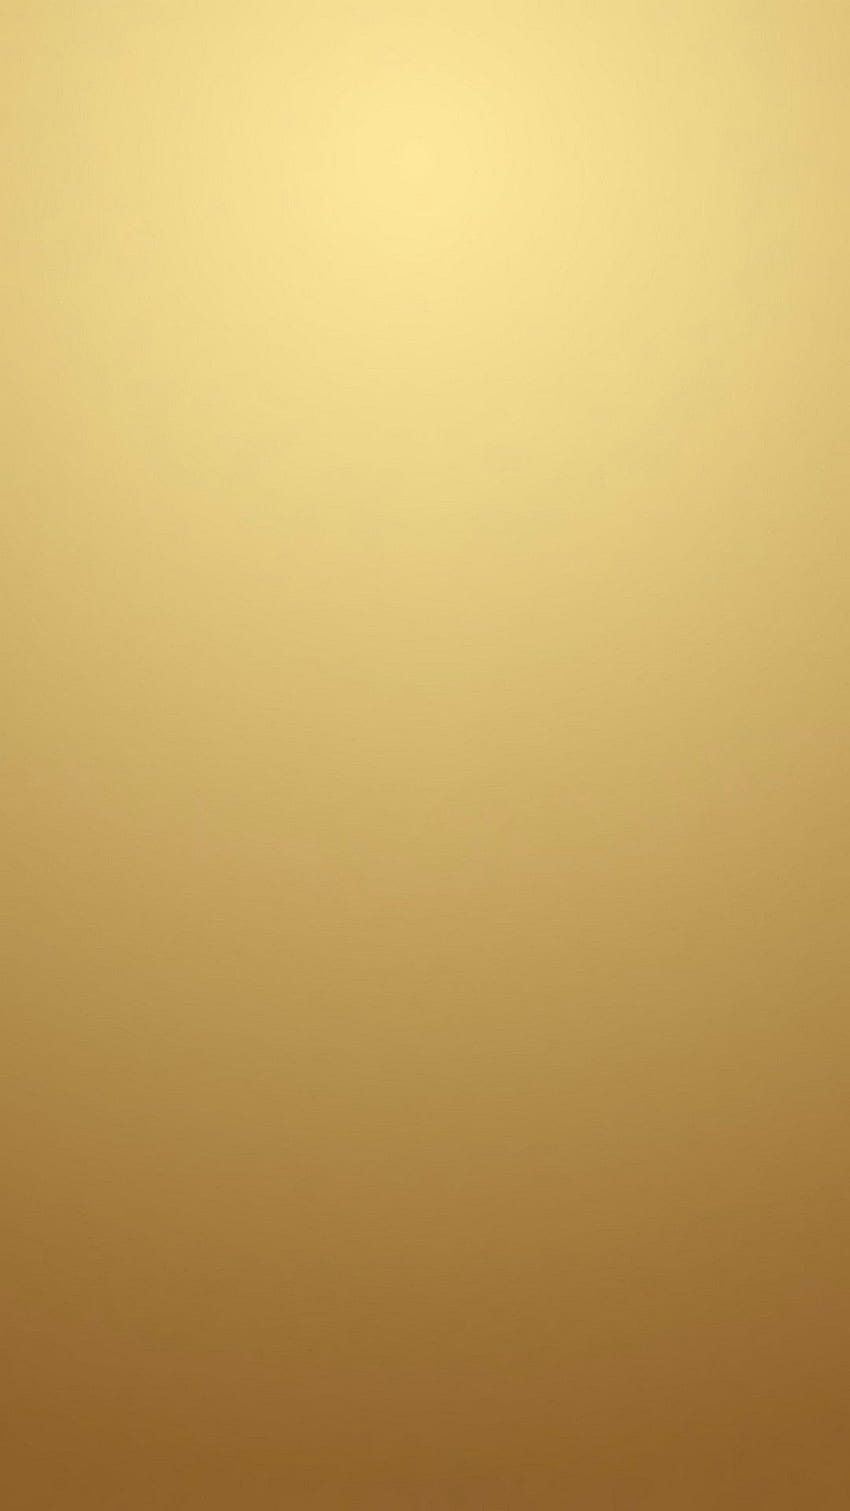 Plain Gold For iPhone - Best iPhone . Gold, Plain Golden HD phone wallpaper